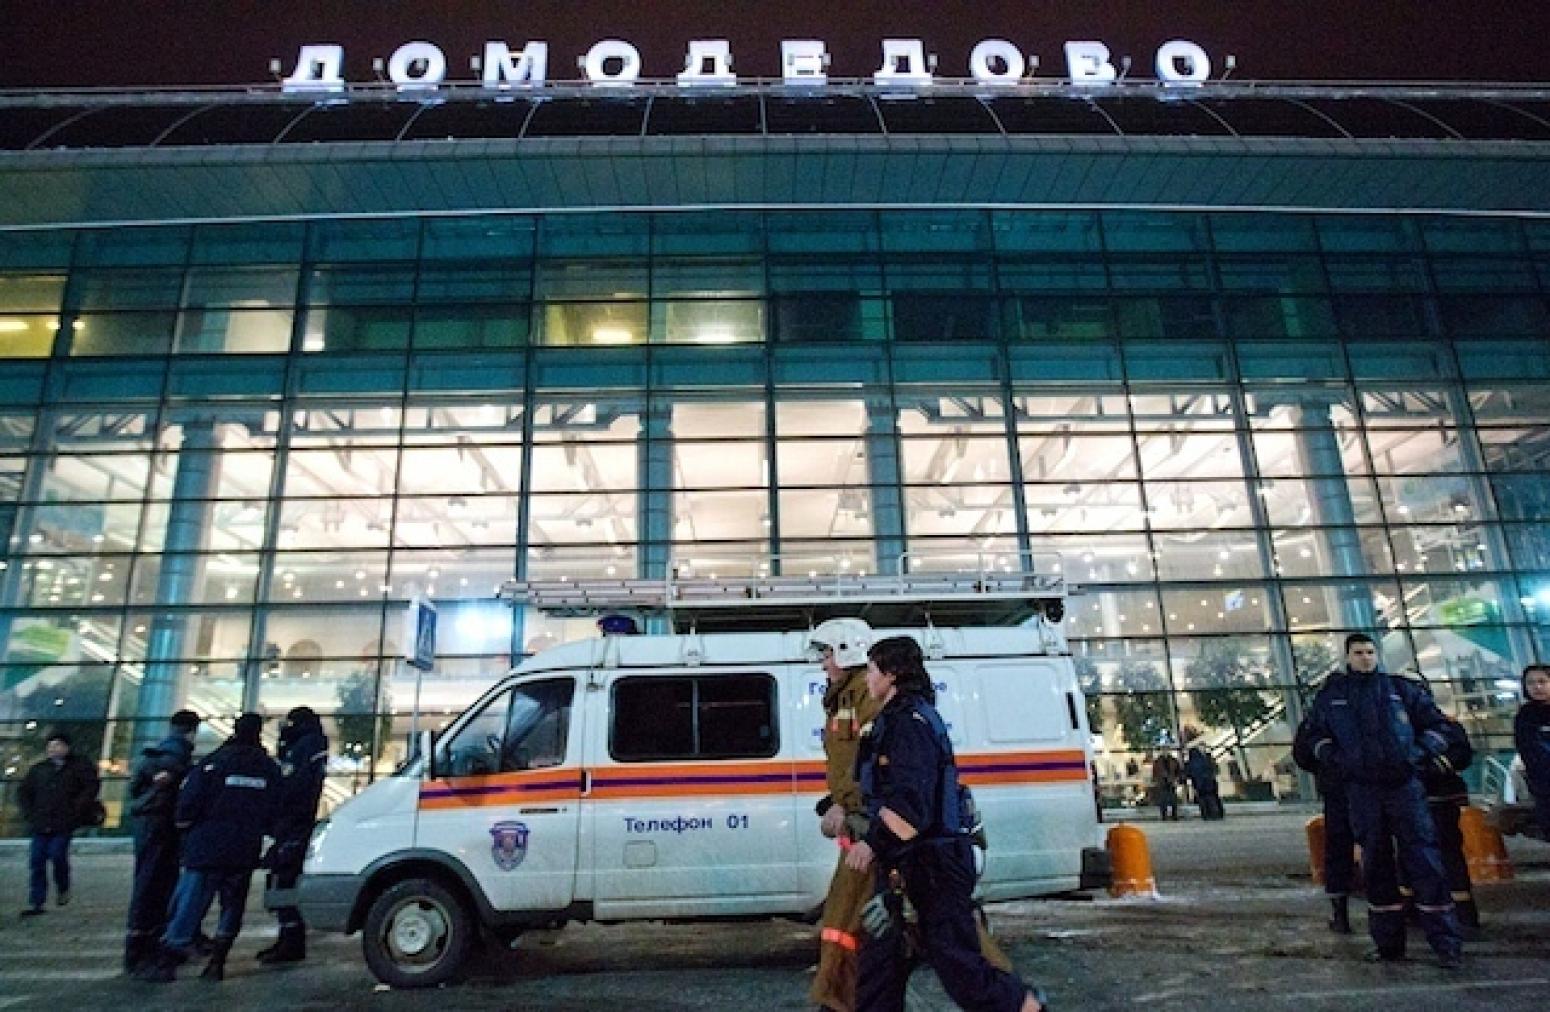 Что творится в домодедово сегодня. Теракт в аэропорту Домодедово 2011. Взрыв в аэропорту Домодедово 2011. Теракт в аэропорту Домодедово 24 января 2011 года.